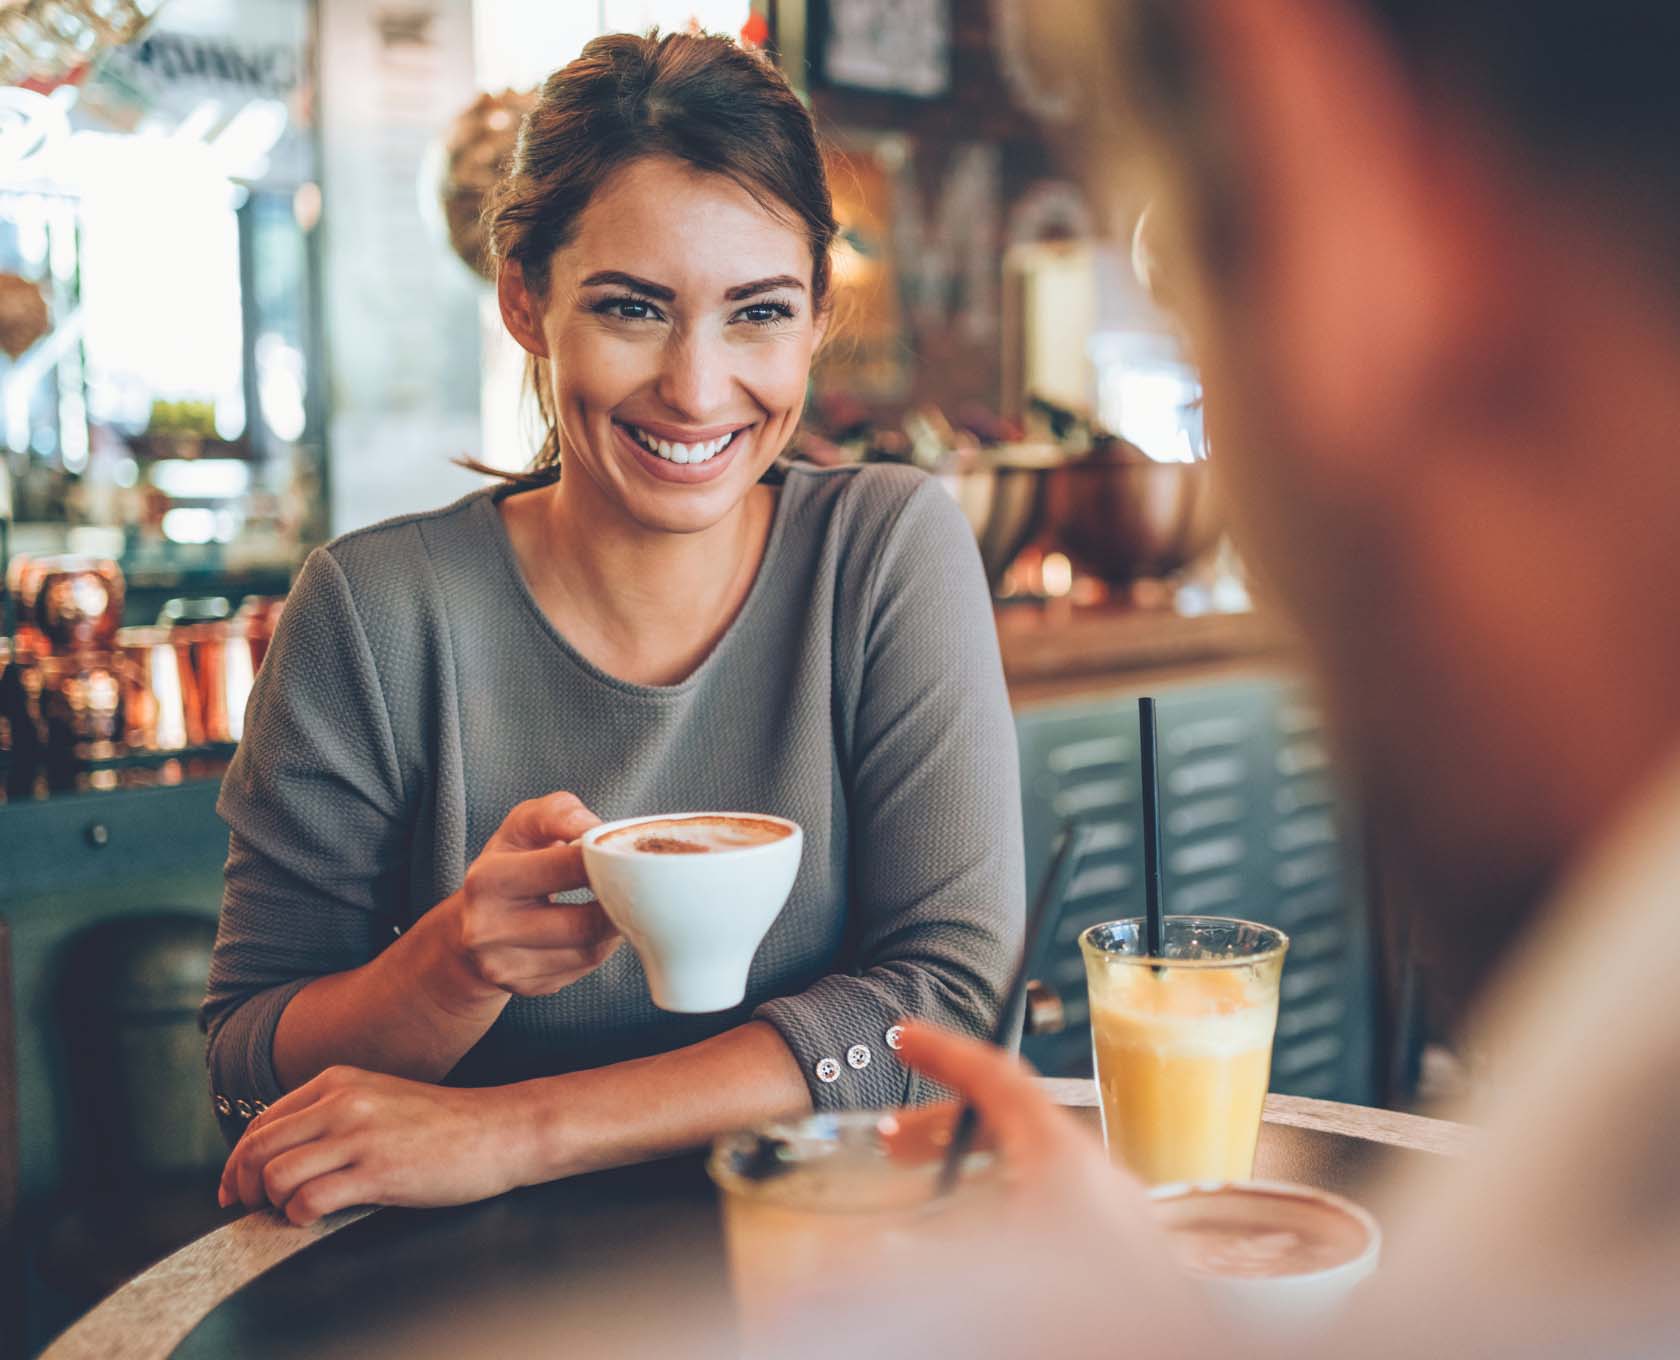 Young woman enjoying a coffee